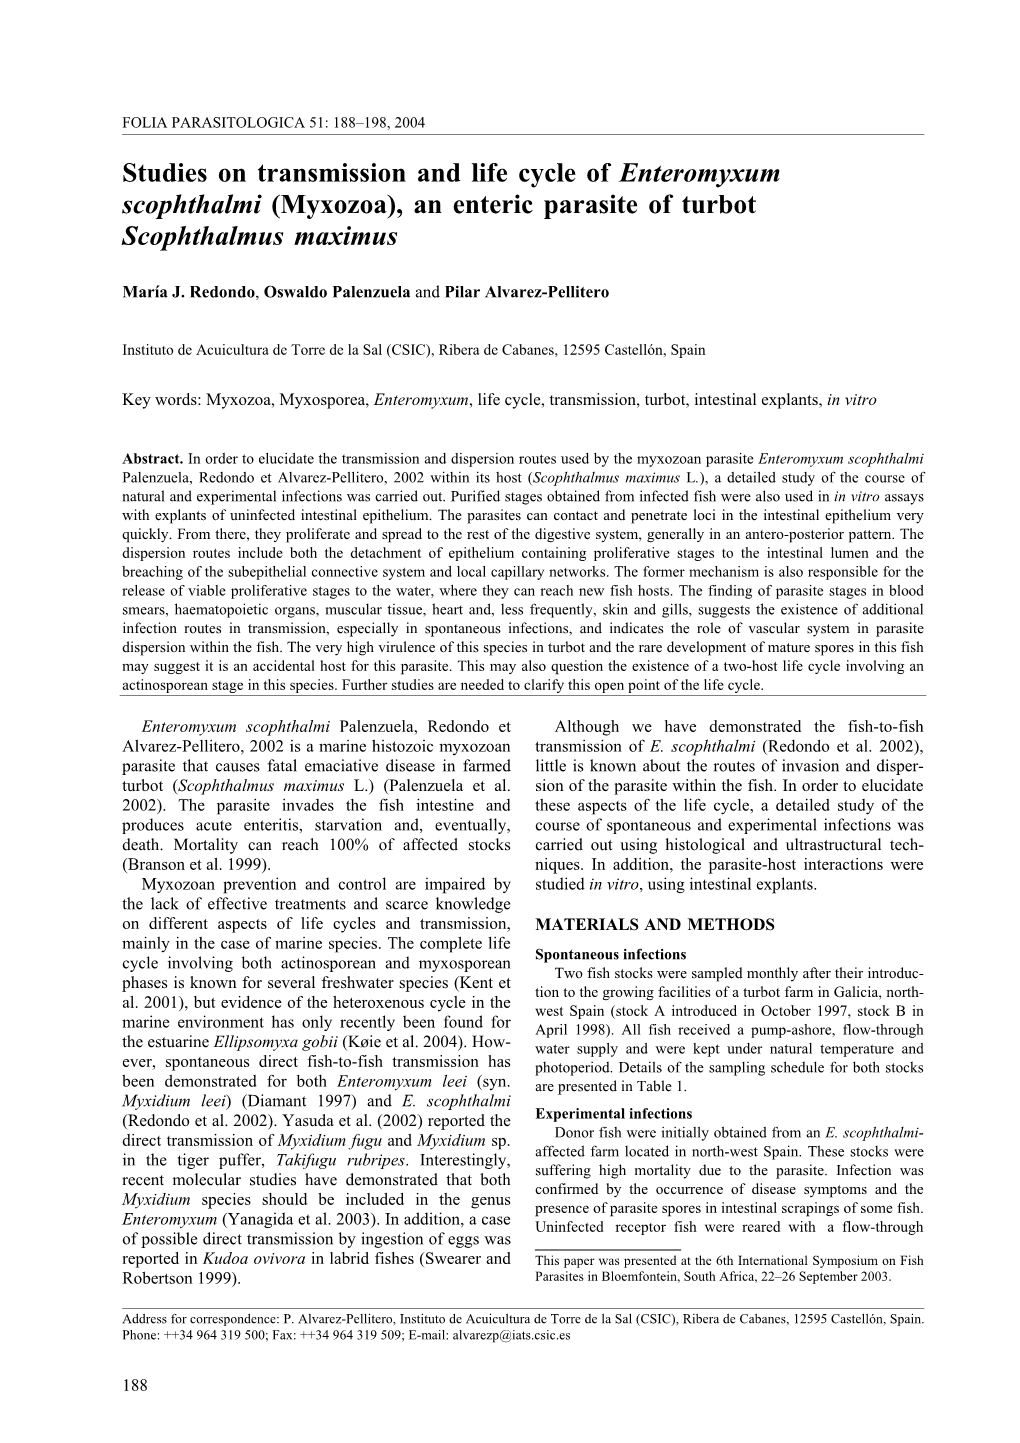 Studies on Transmission and Life Cycle of Enteromyxum Scophthalmi (Myxozoa), an Enteric Parasite of Turbot Scophthalmus Maximus